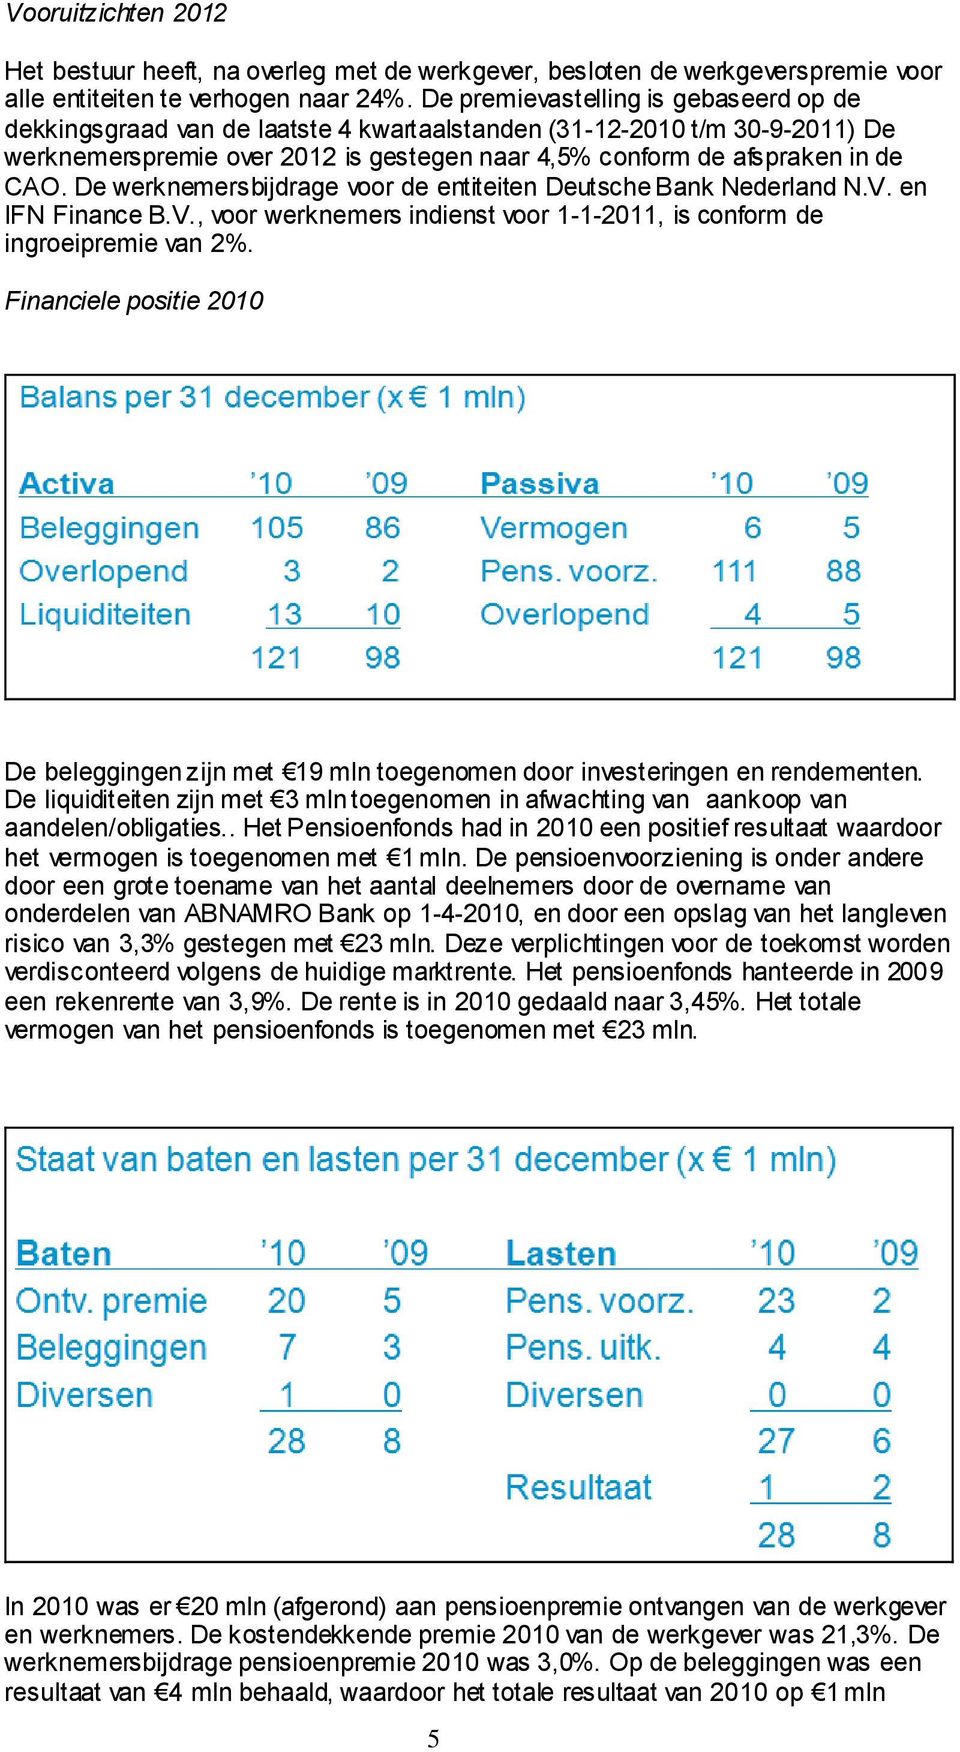 De werknemersbijdrage voor de entiteiten Deutsche Bank Nederland N.V. en IFN Finance B.V., voor werknemers indienst voor 1-1-2011, is conform de ingroeipremie van 2%.